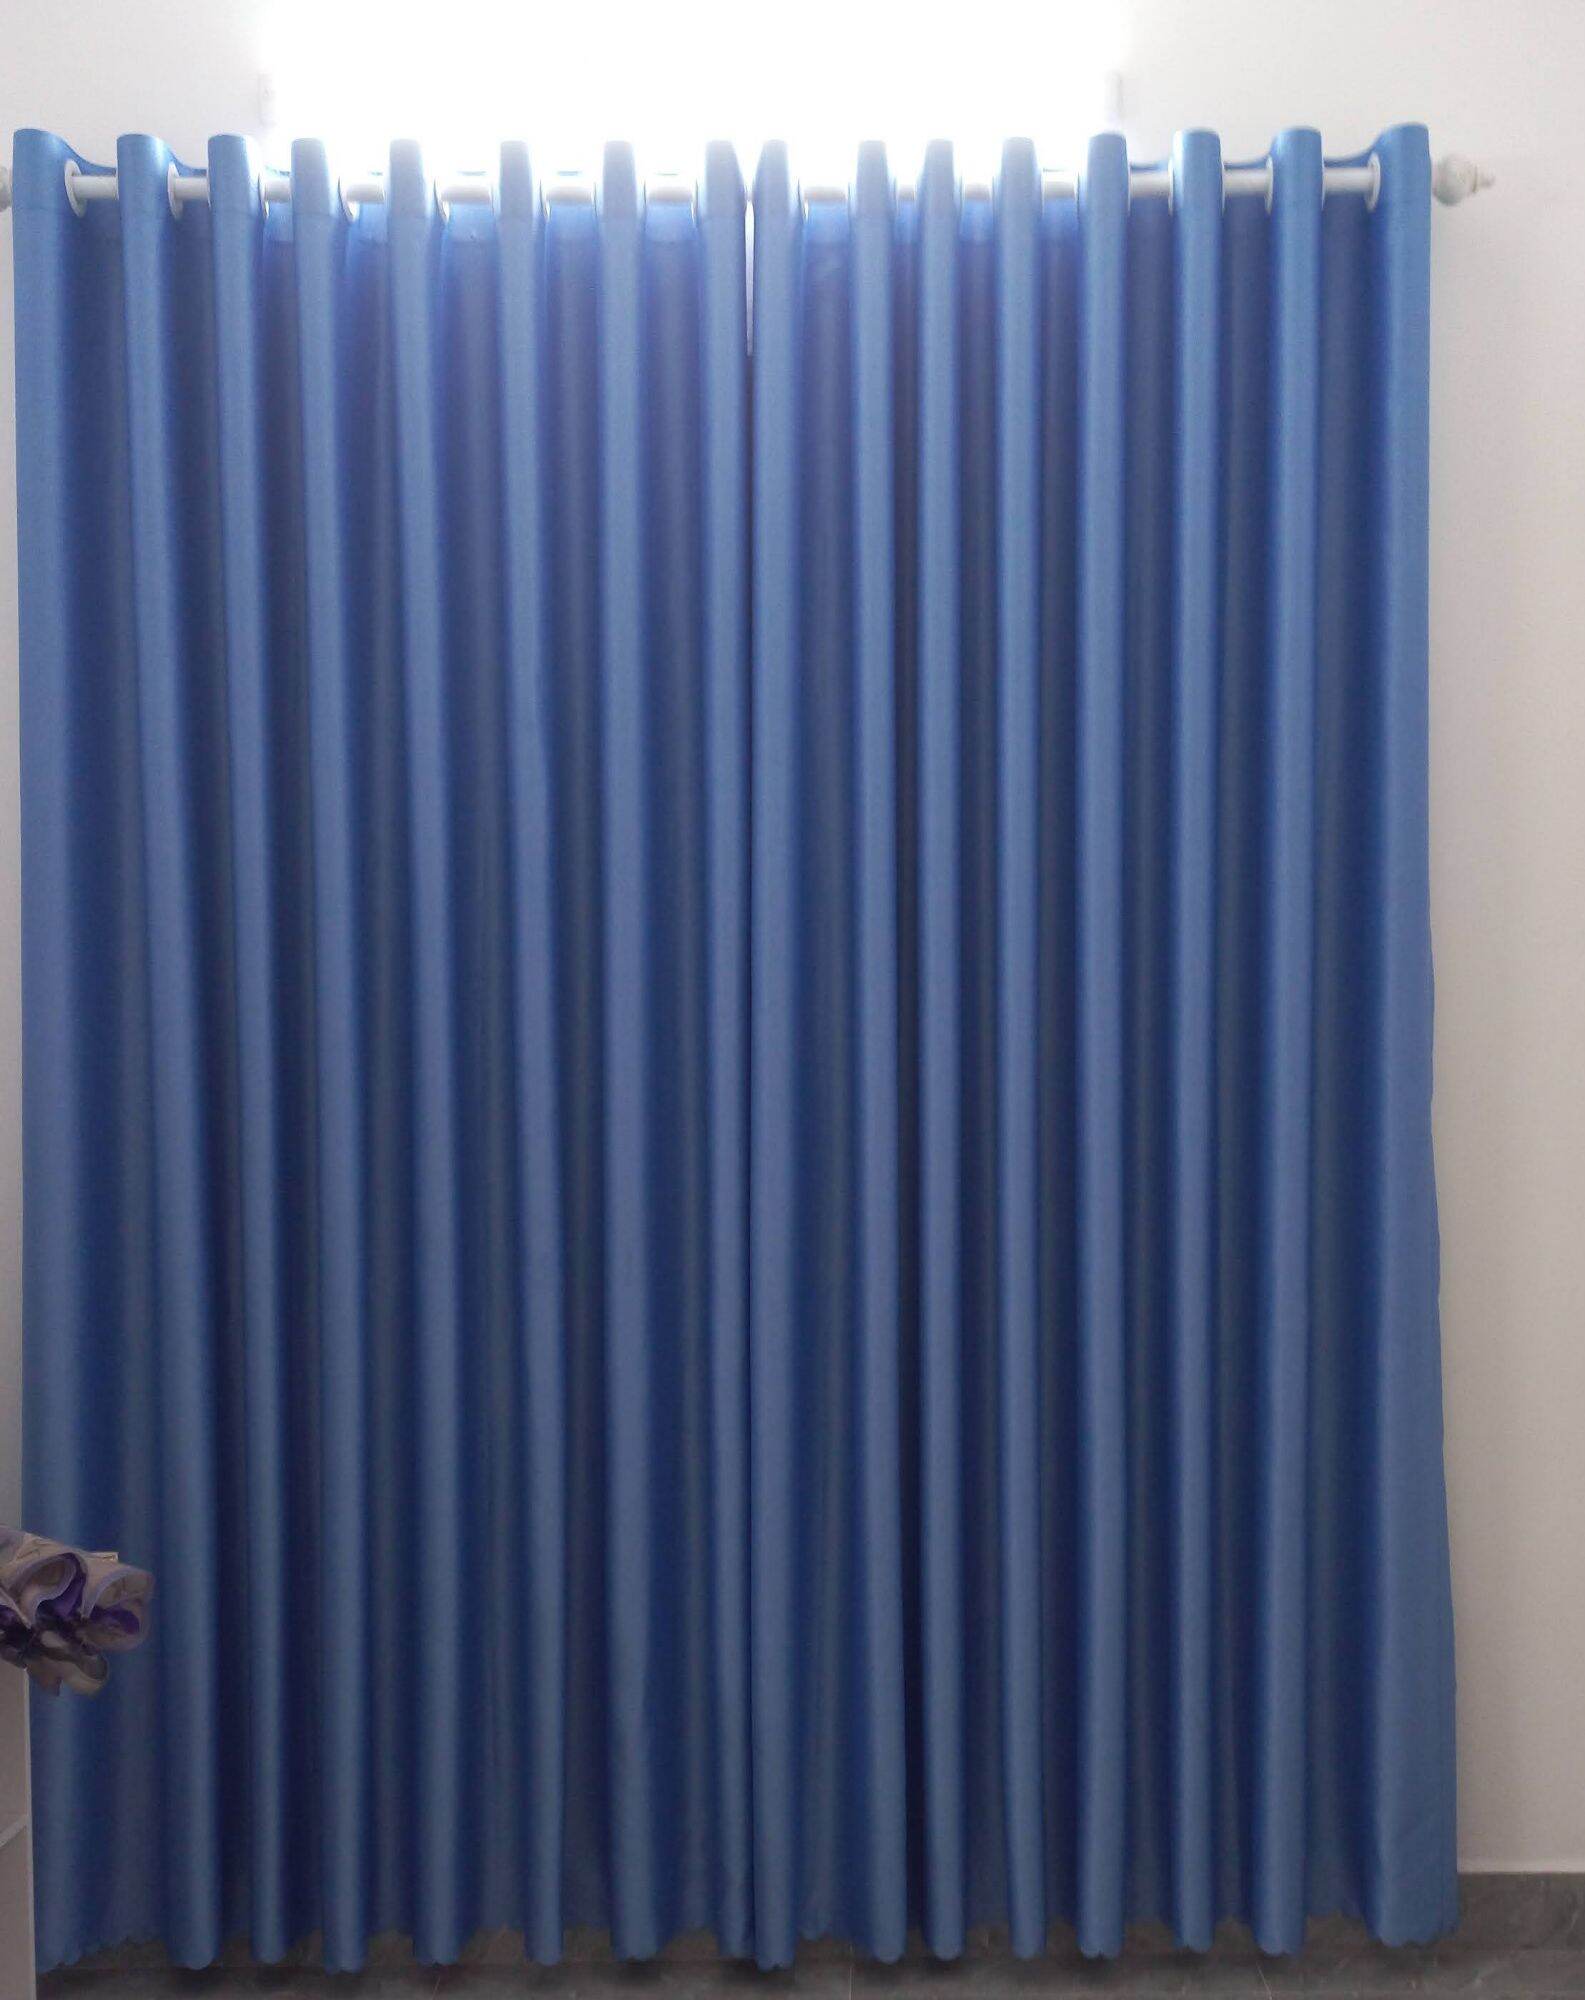 Rèm màu xanh rèm cửa sổ rèm phòng khách rèm phòng ngủ rèm văn phòng